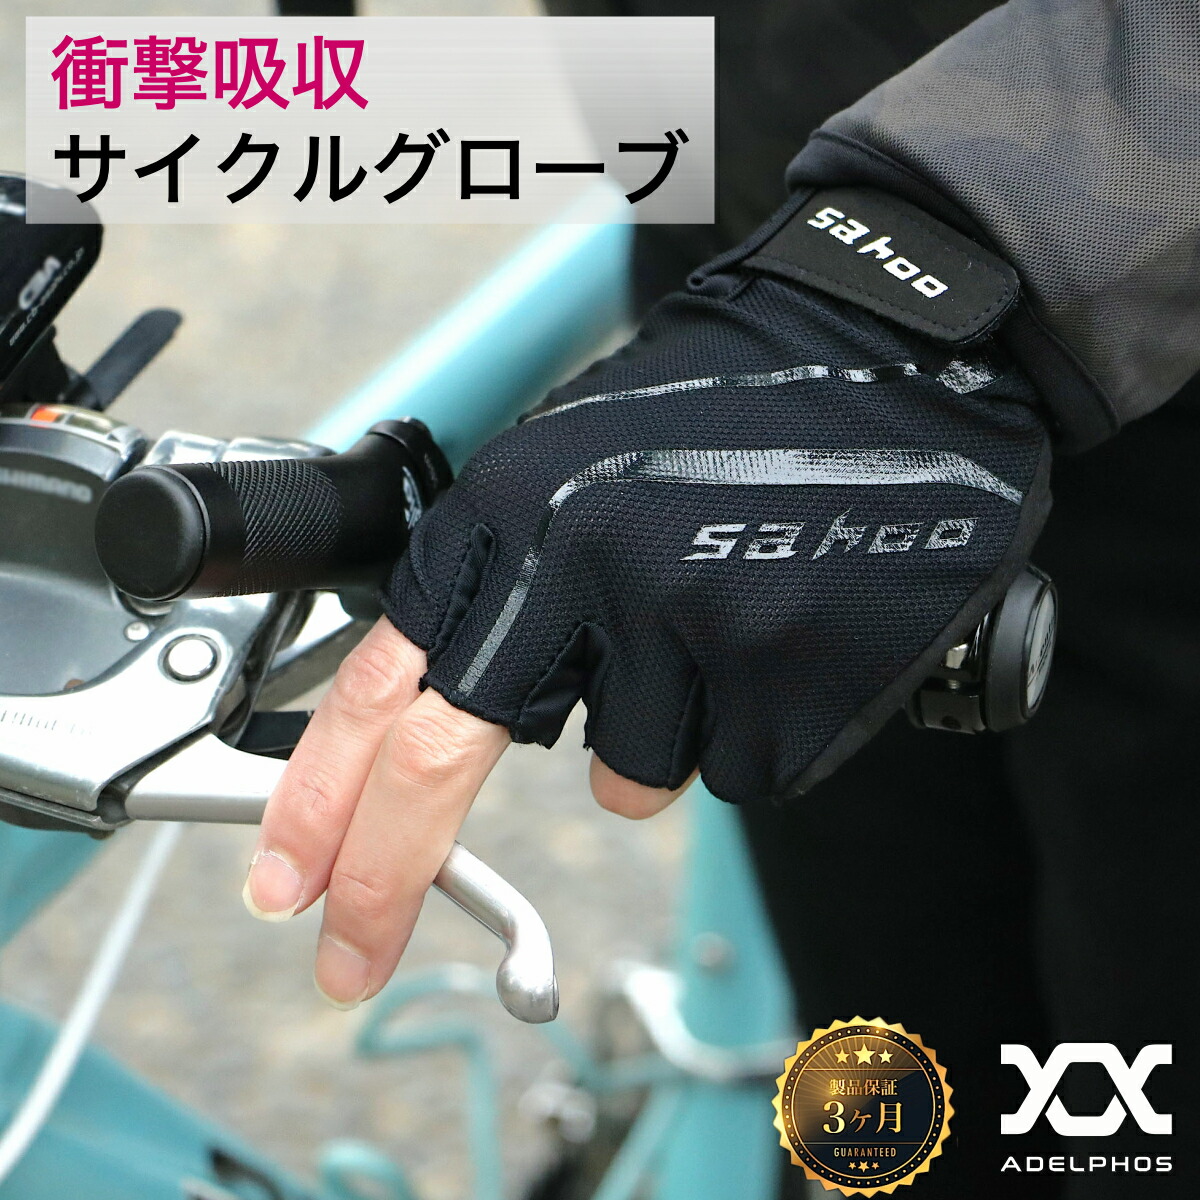 価格でベストの 手袋 サイクルグローブ 自転車 登山 トレーニンググローブ フィンガーグローブ 販売 員:202円  トレーニング用品